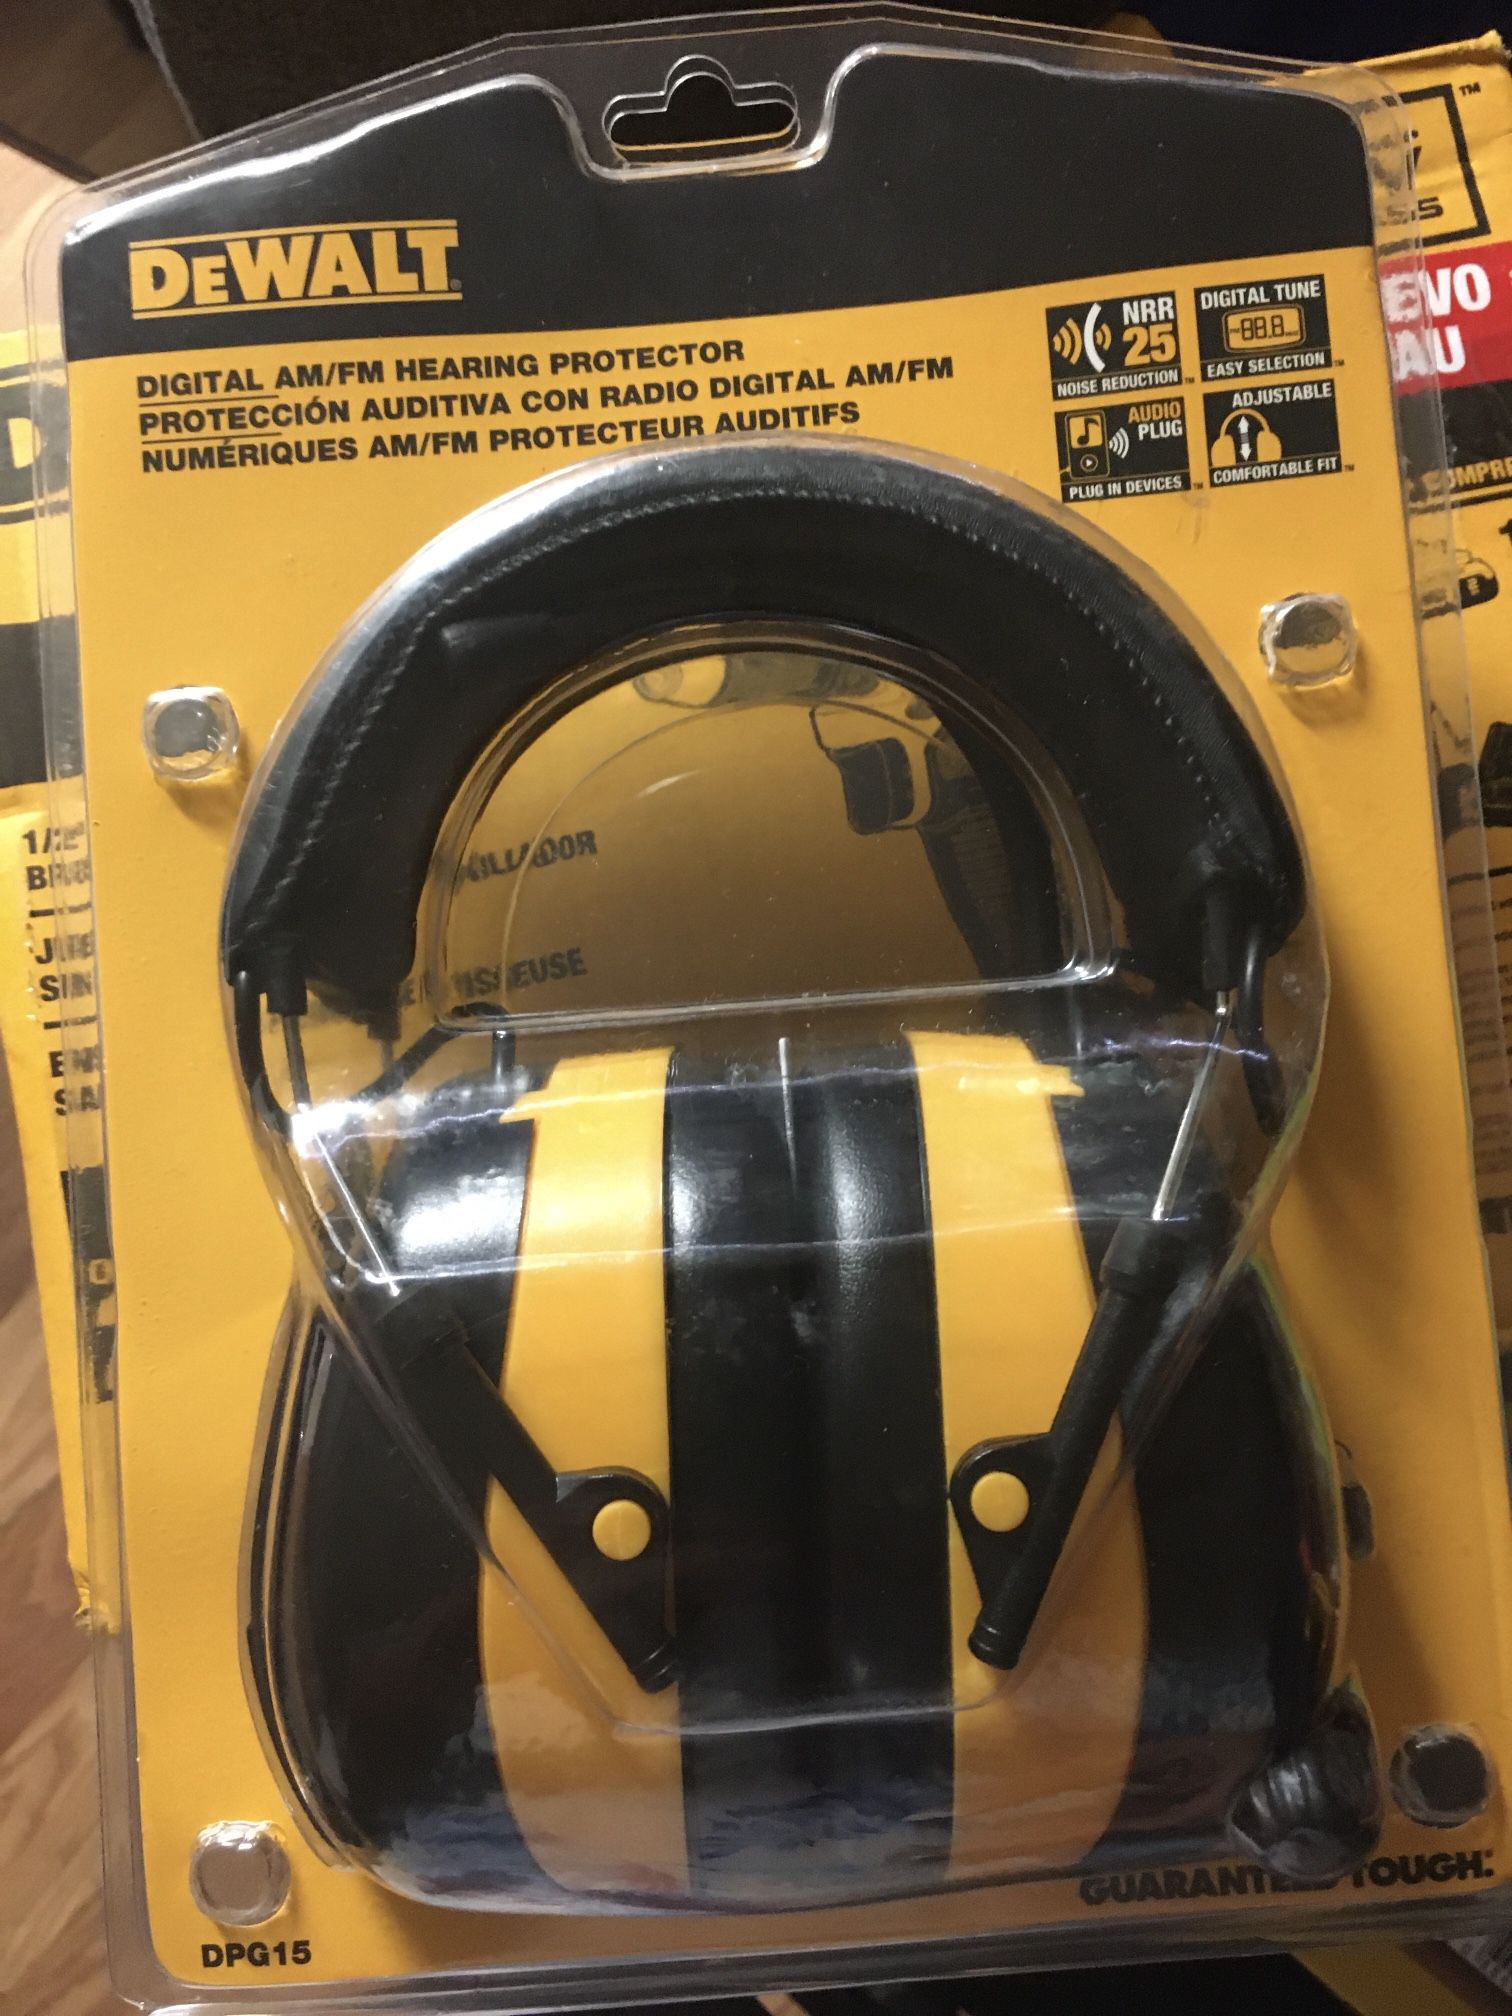 Dewalt Headset for Sale in Greenville, SC OfferUp